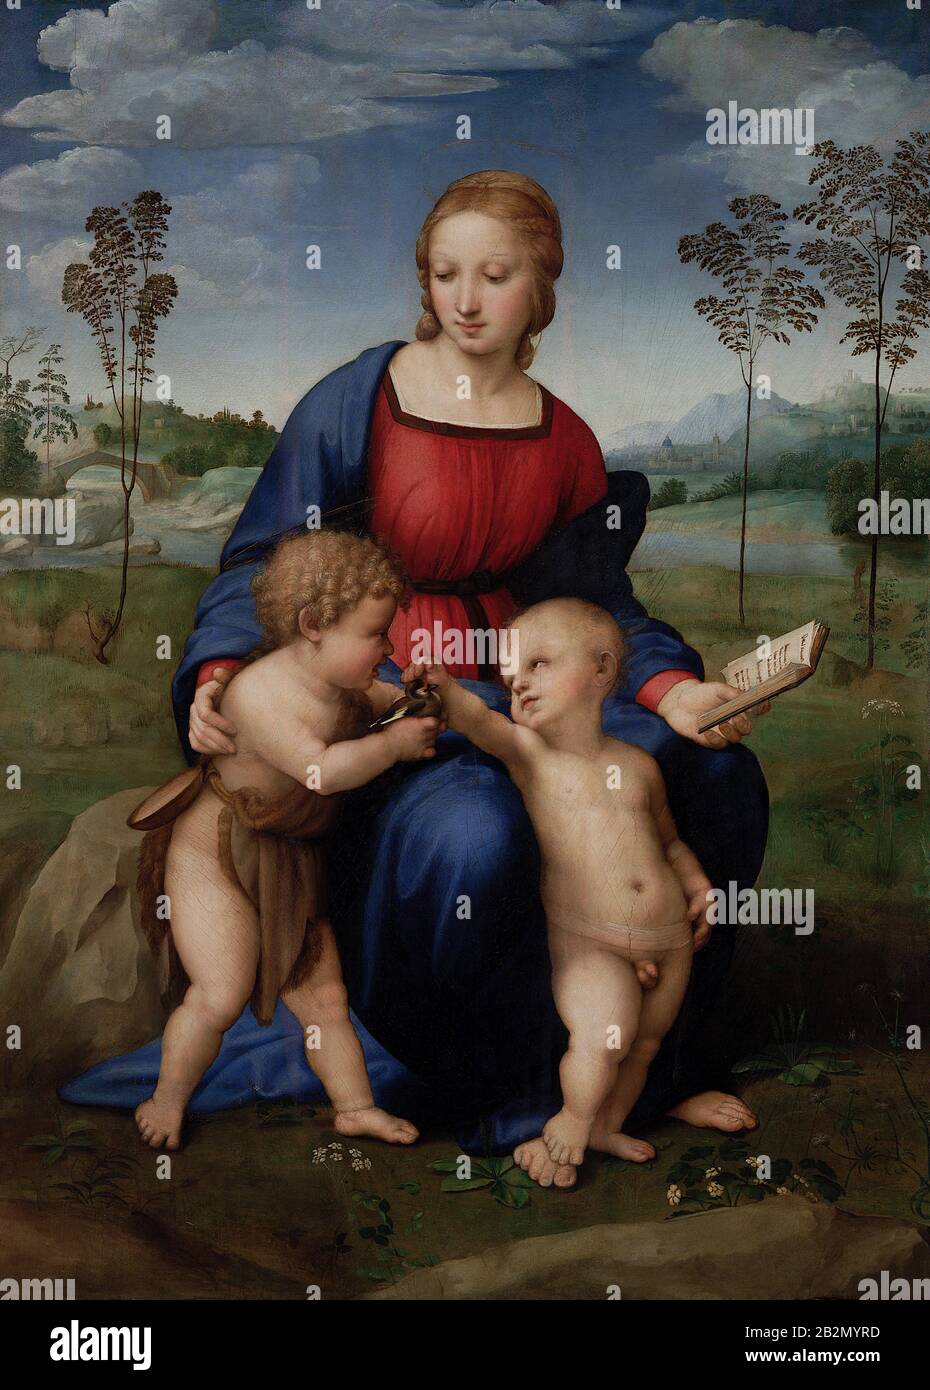 Madonna del Cardellino (1506) dipinto di Raffaello Sanzio da Urbino - immagine Di Altissima qualità e risoluzione Foto Stock